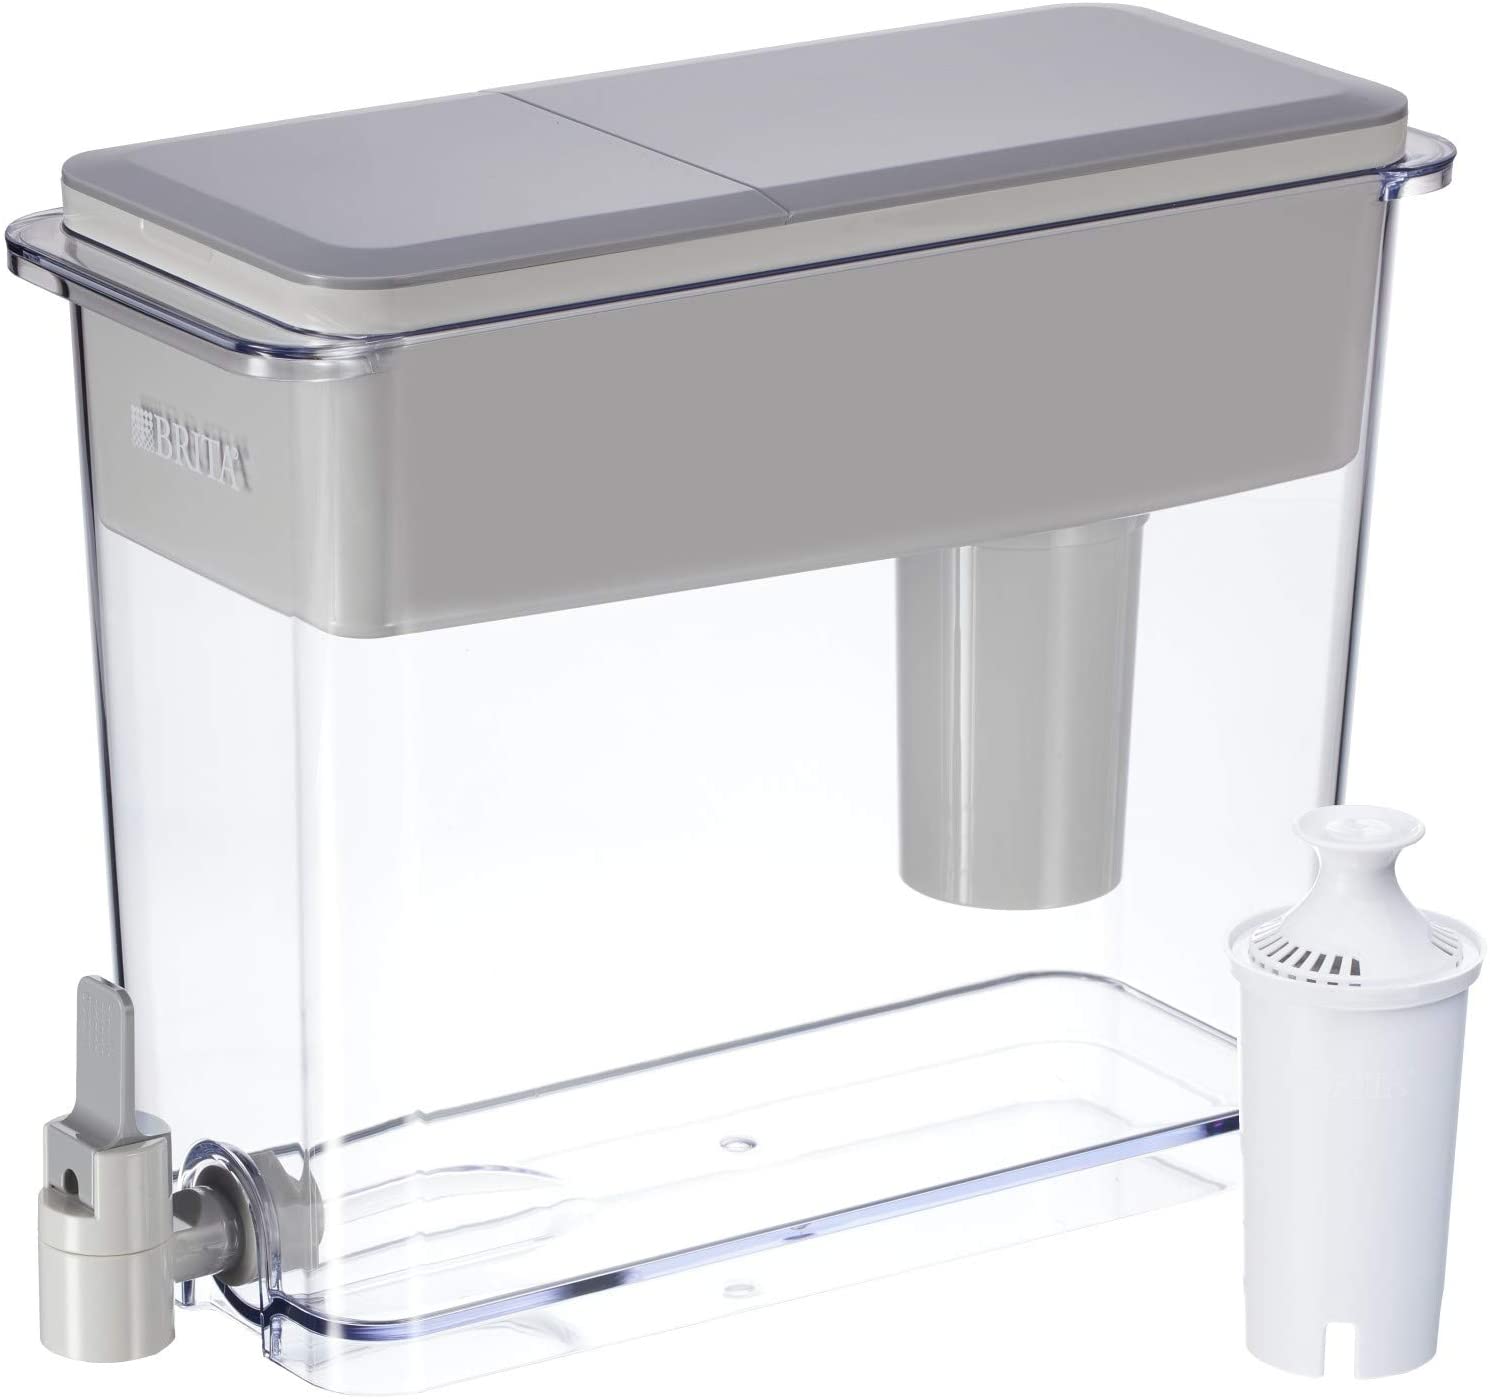 Brita Standard UltraMax Water Filter Dispenser